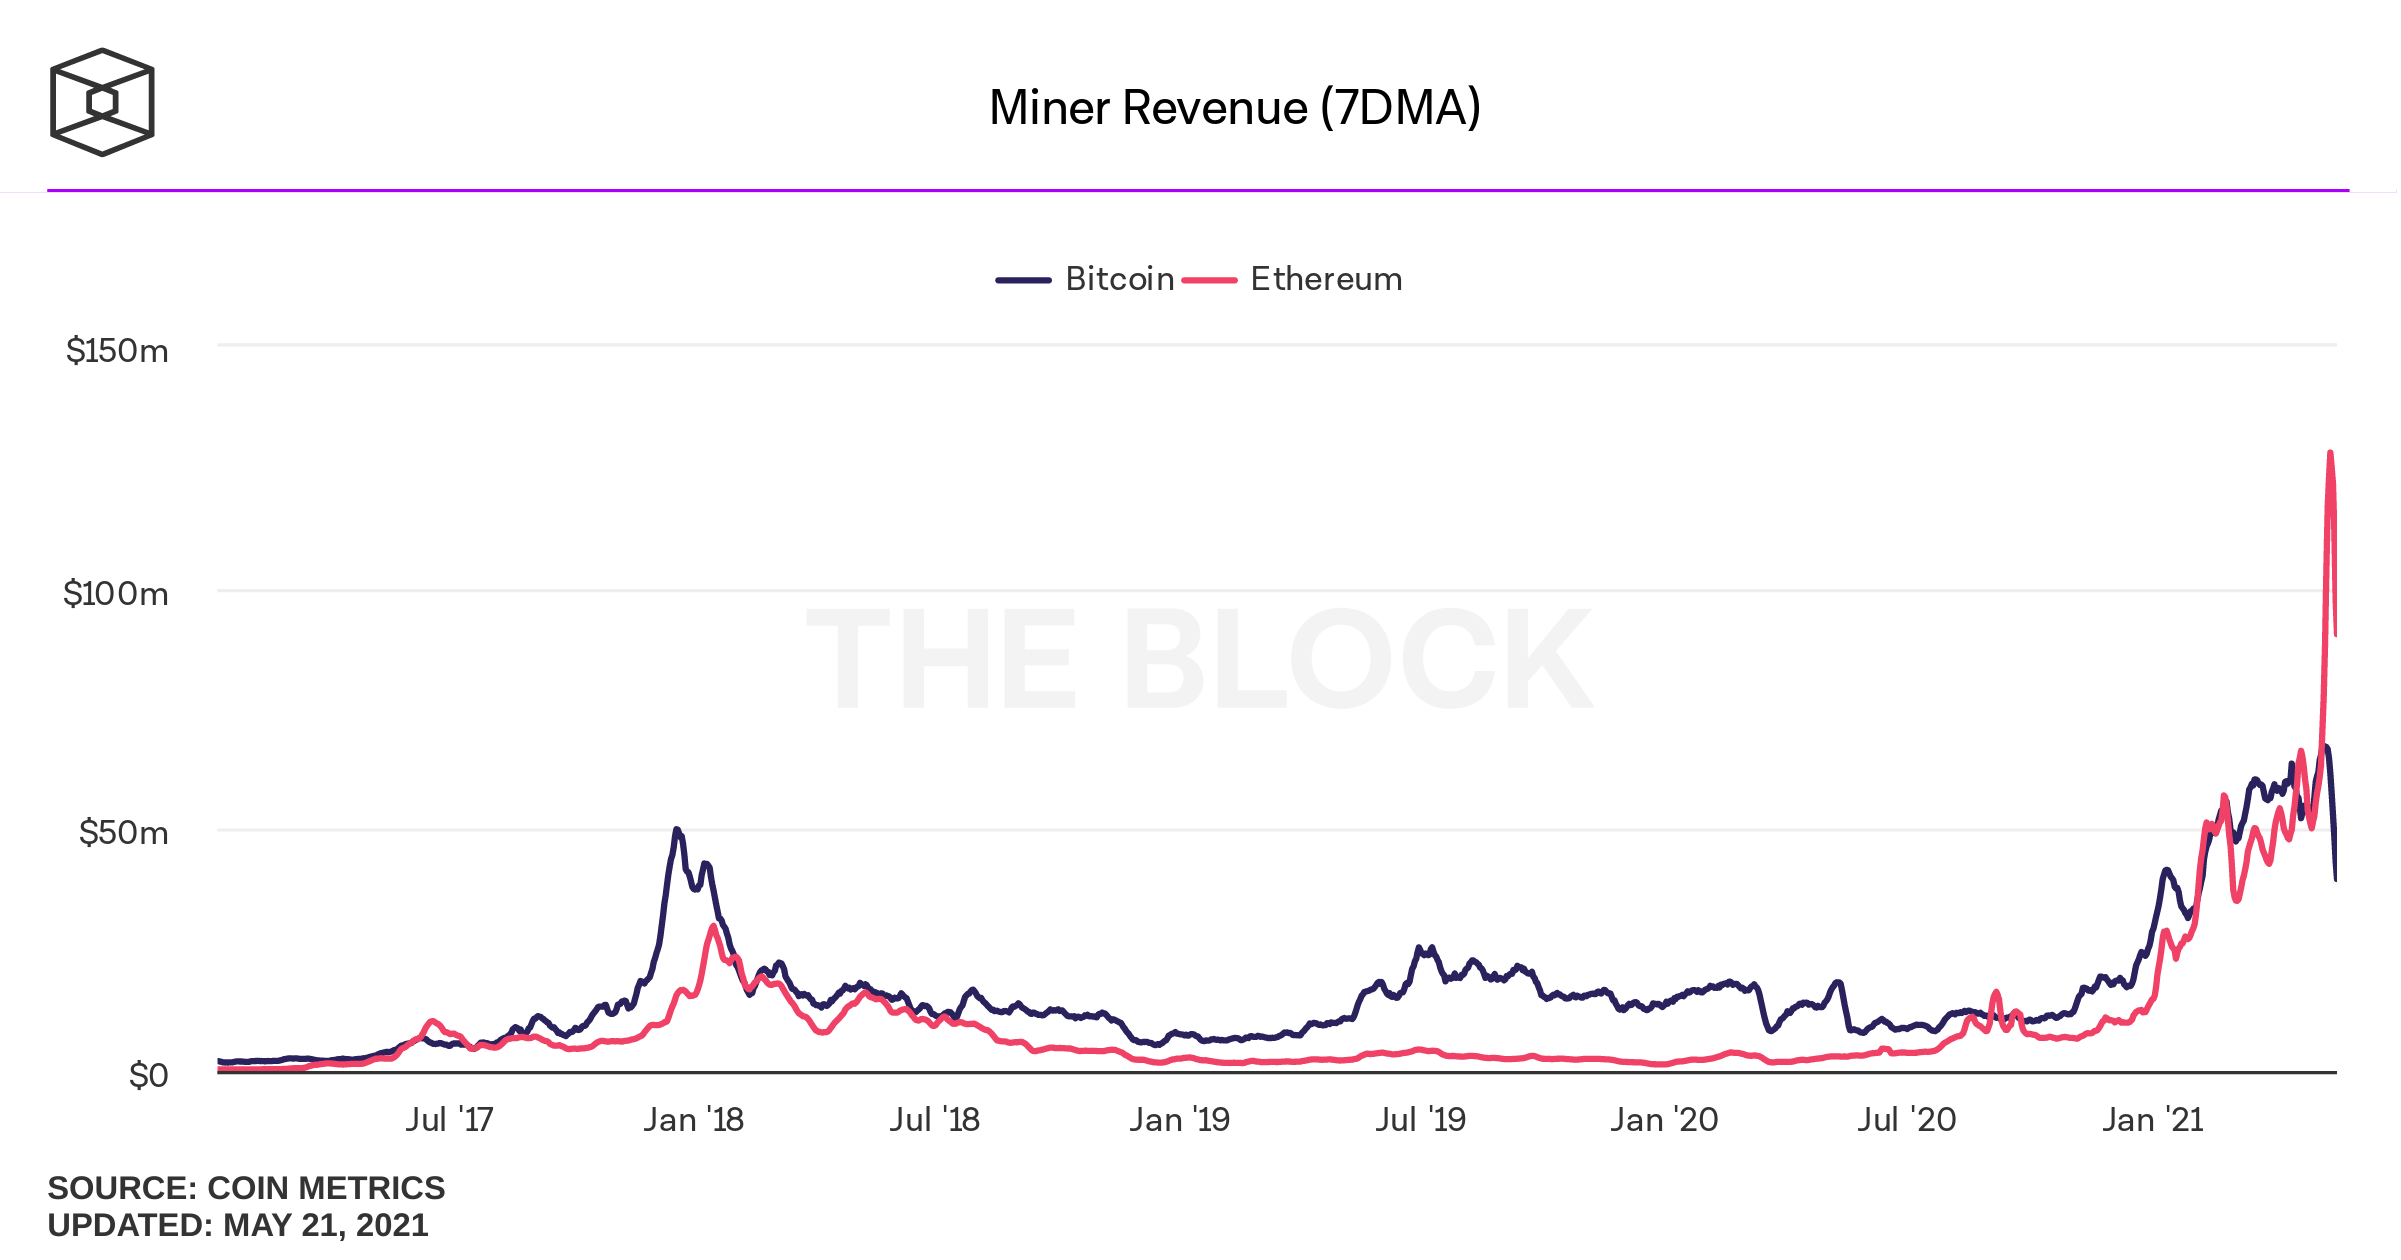 Aceeași perioadă [9-15 Mai] - coincide cu intervalul în care minerii ETH au obținut venituri mai mari decât minerii BTC. În 15 Mai, minerii de Ethereum au câștigat peste $128 de milioane într-o singură zi - dublu față de $62 de milioane, suma pe care au generat-o minerii Bitcoin în aceeași zi.